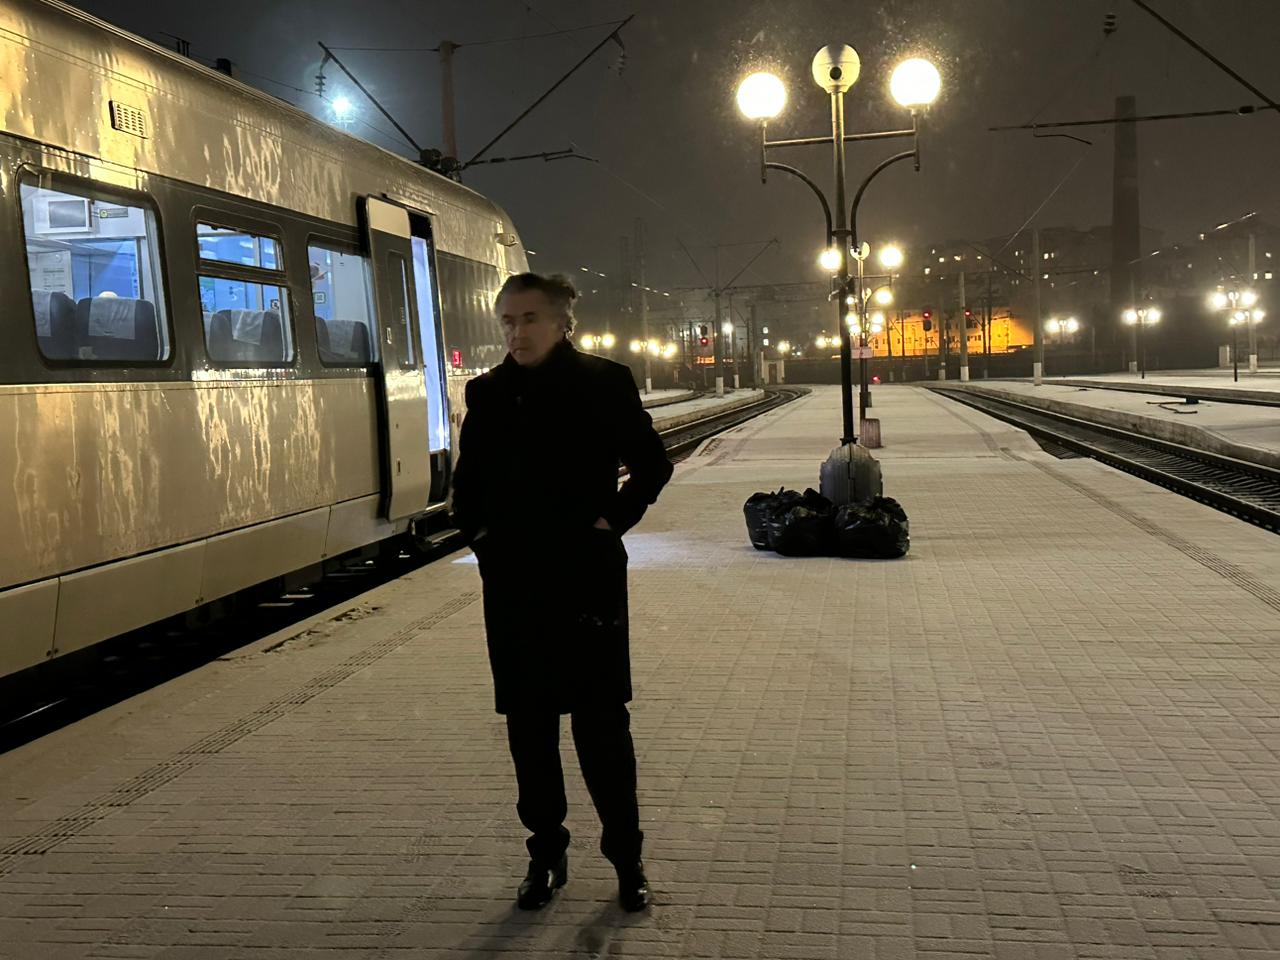 BHL lors du voyage de Lviv à Kiev, en Ukraine, pour la présentation du film « Slava Ukraini ». Il est seul sous la neige sur un quai de gare.